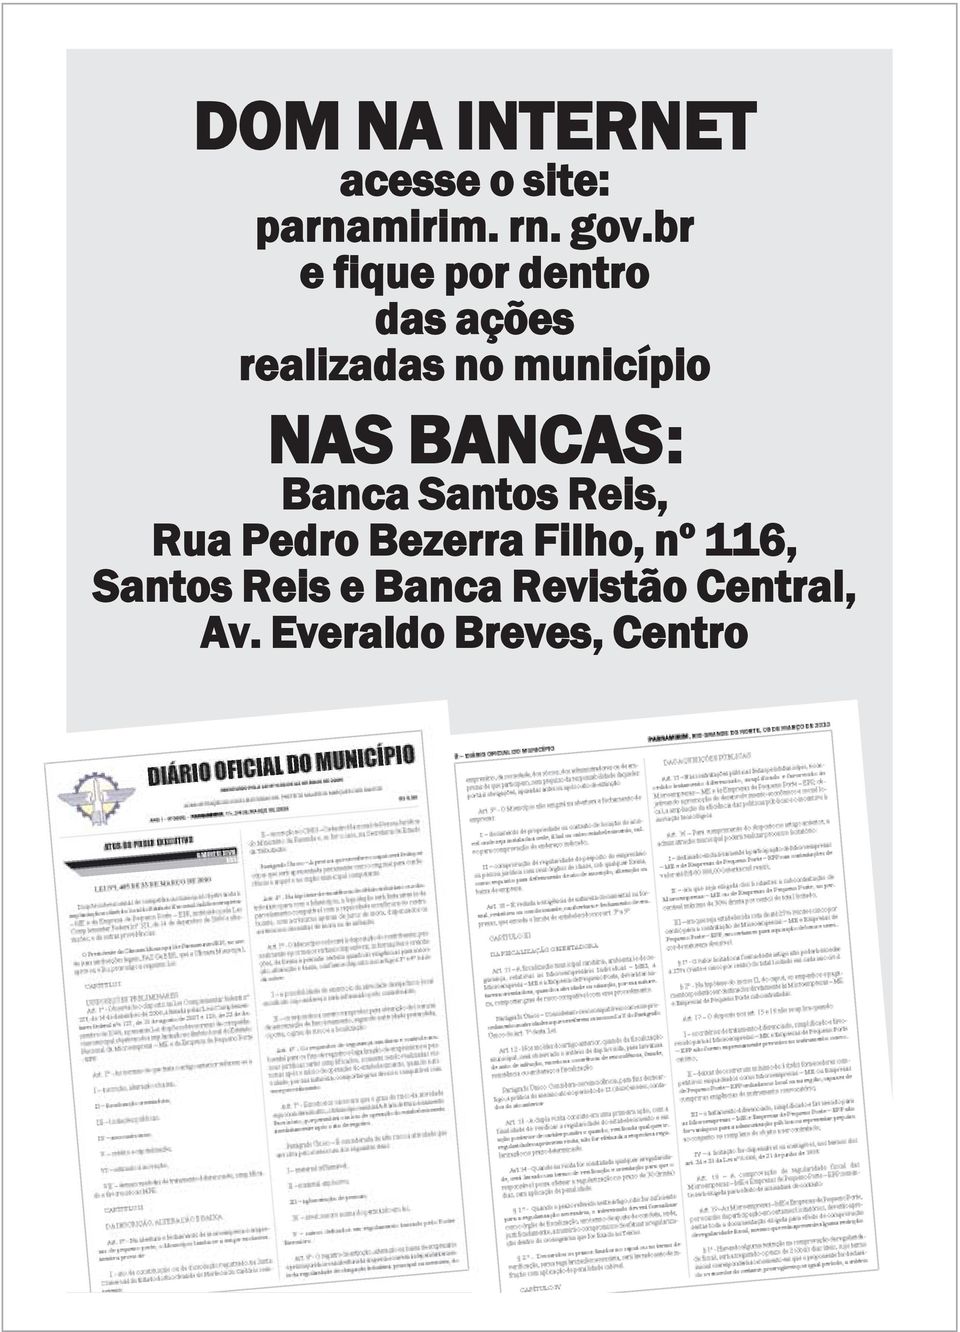 NAS BANCAS: Banca Santos Reis, Rua Pedro Bezerra Filho, nº